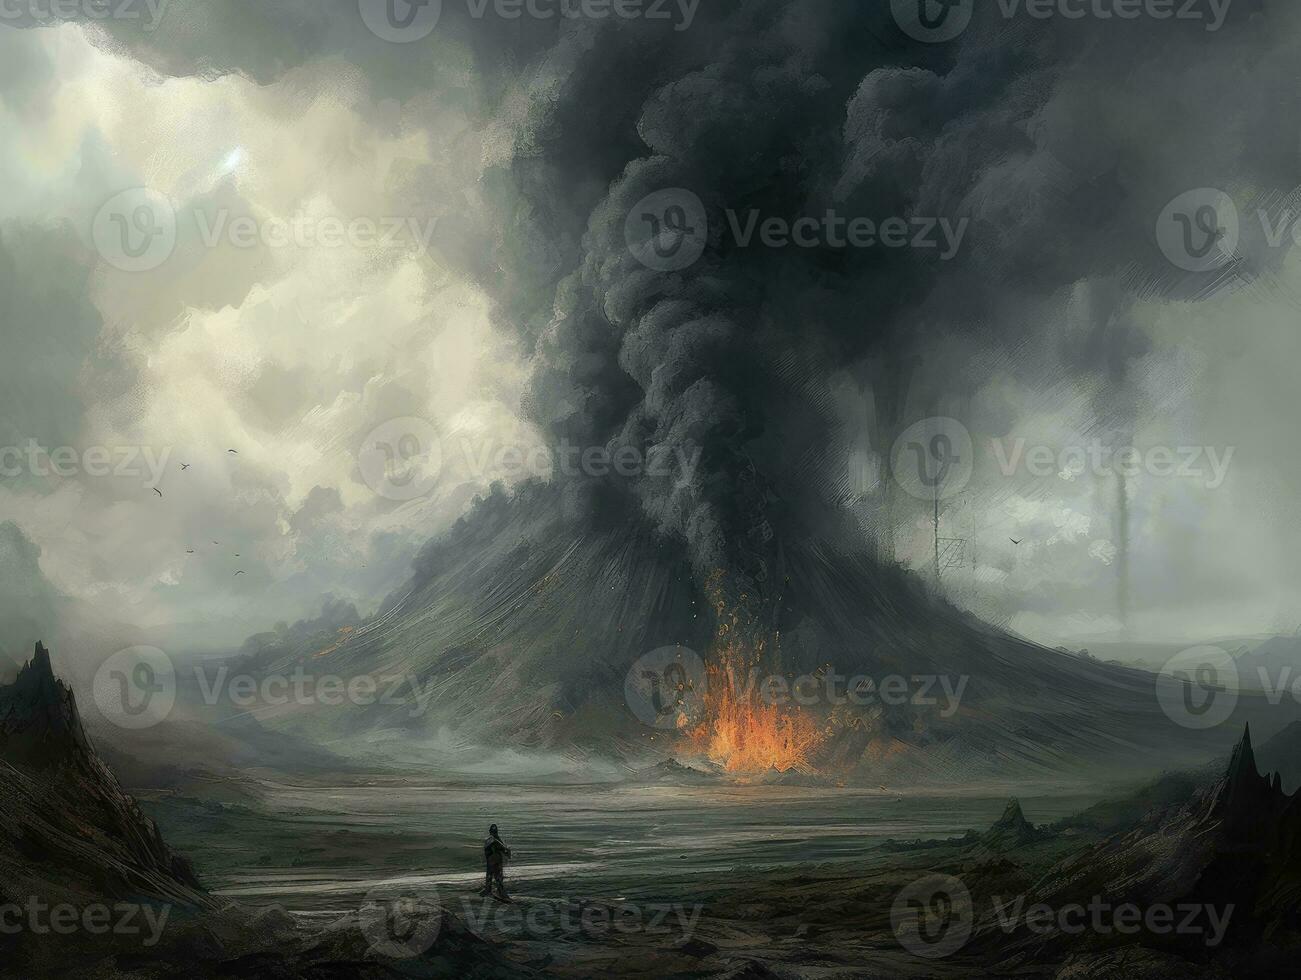 vulkaan explosie brand rook landschap stad mysticus poster buitenaards wezen steampunk behang fantastisch foto